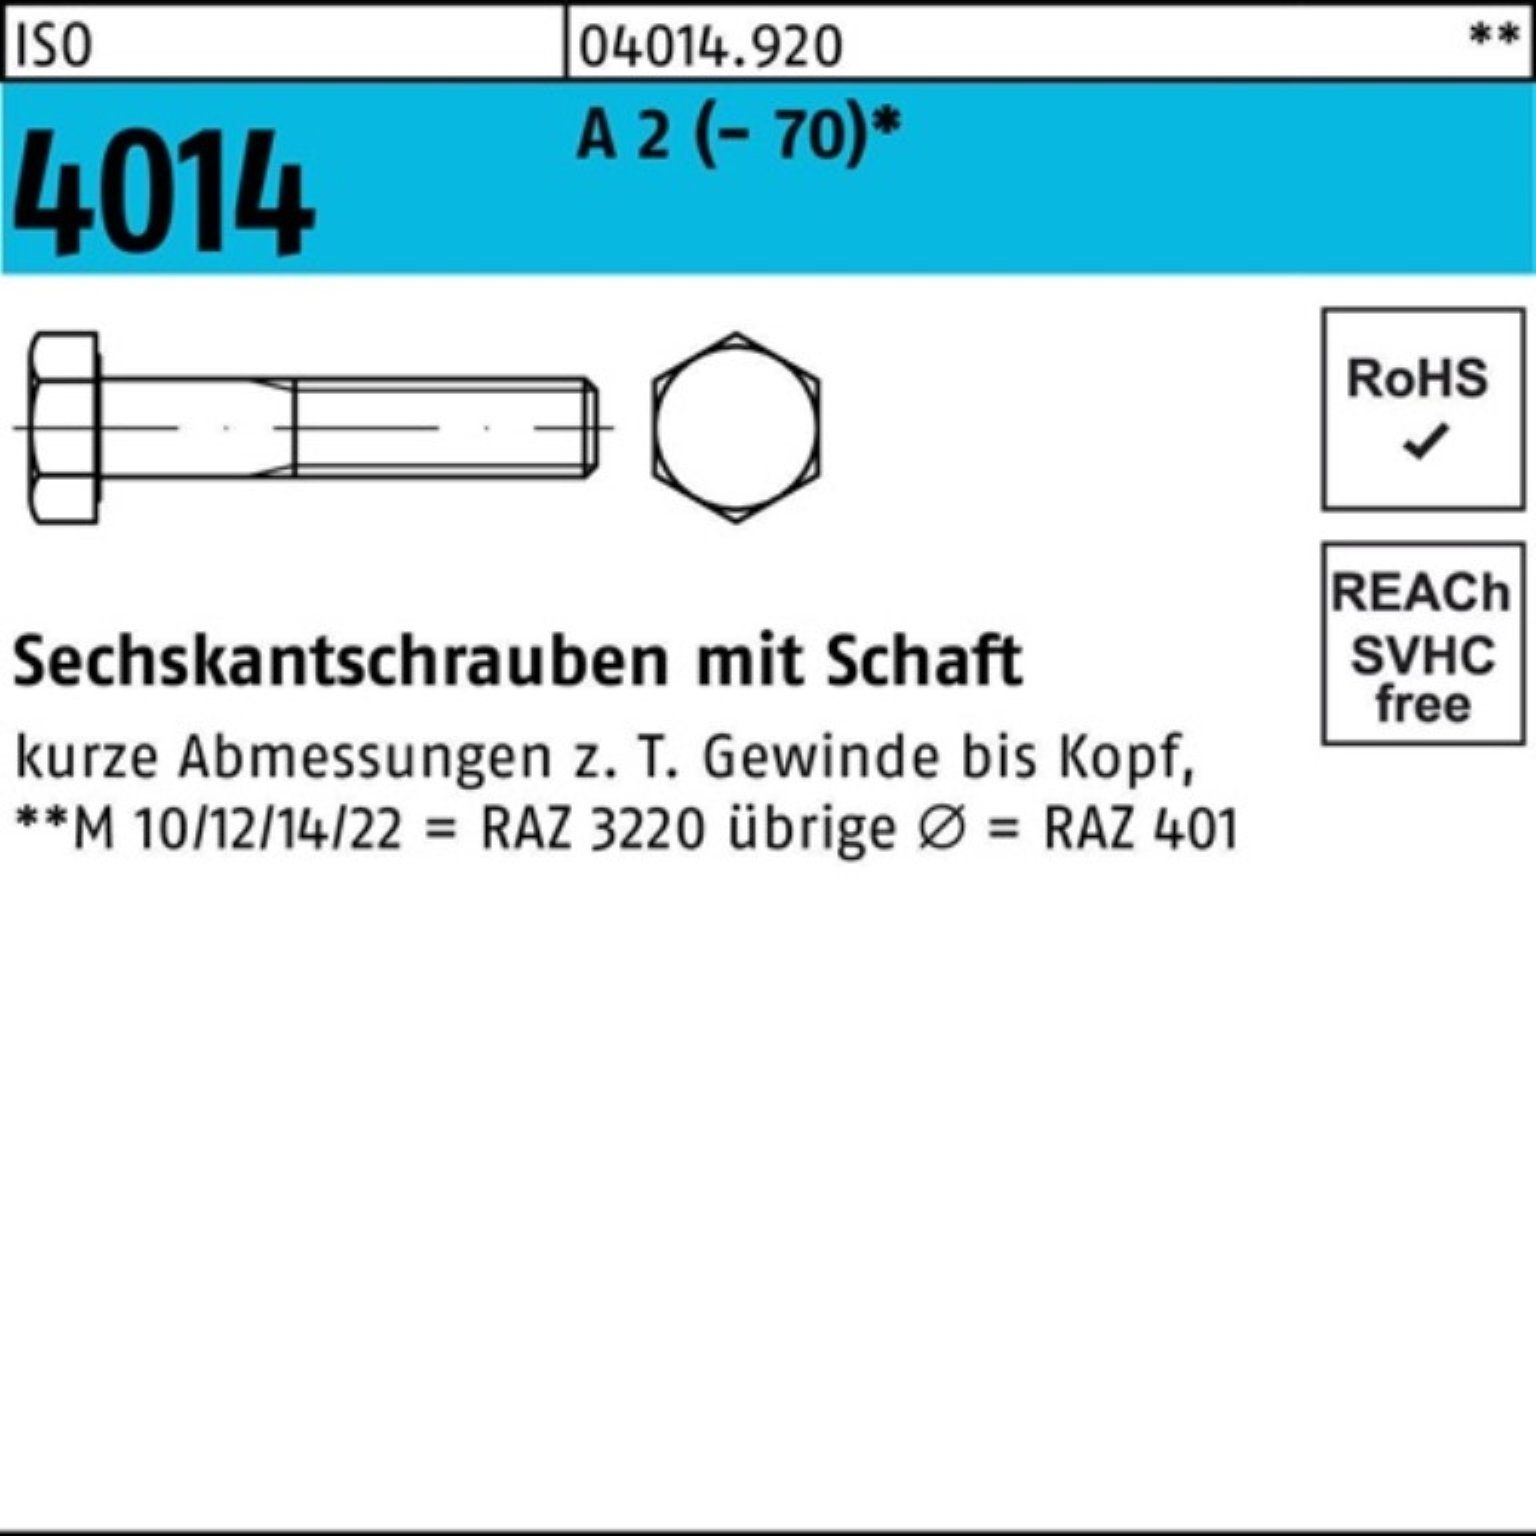 Bufab Sechskantschraube 100er A M30x 4014 ISO ISO 150 1 Sechskantschraube 2 Stück Pack Schaft